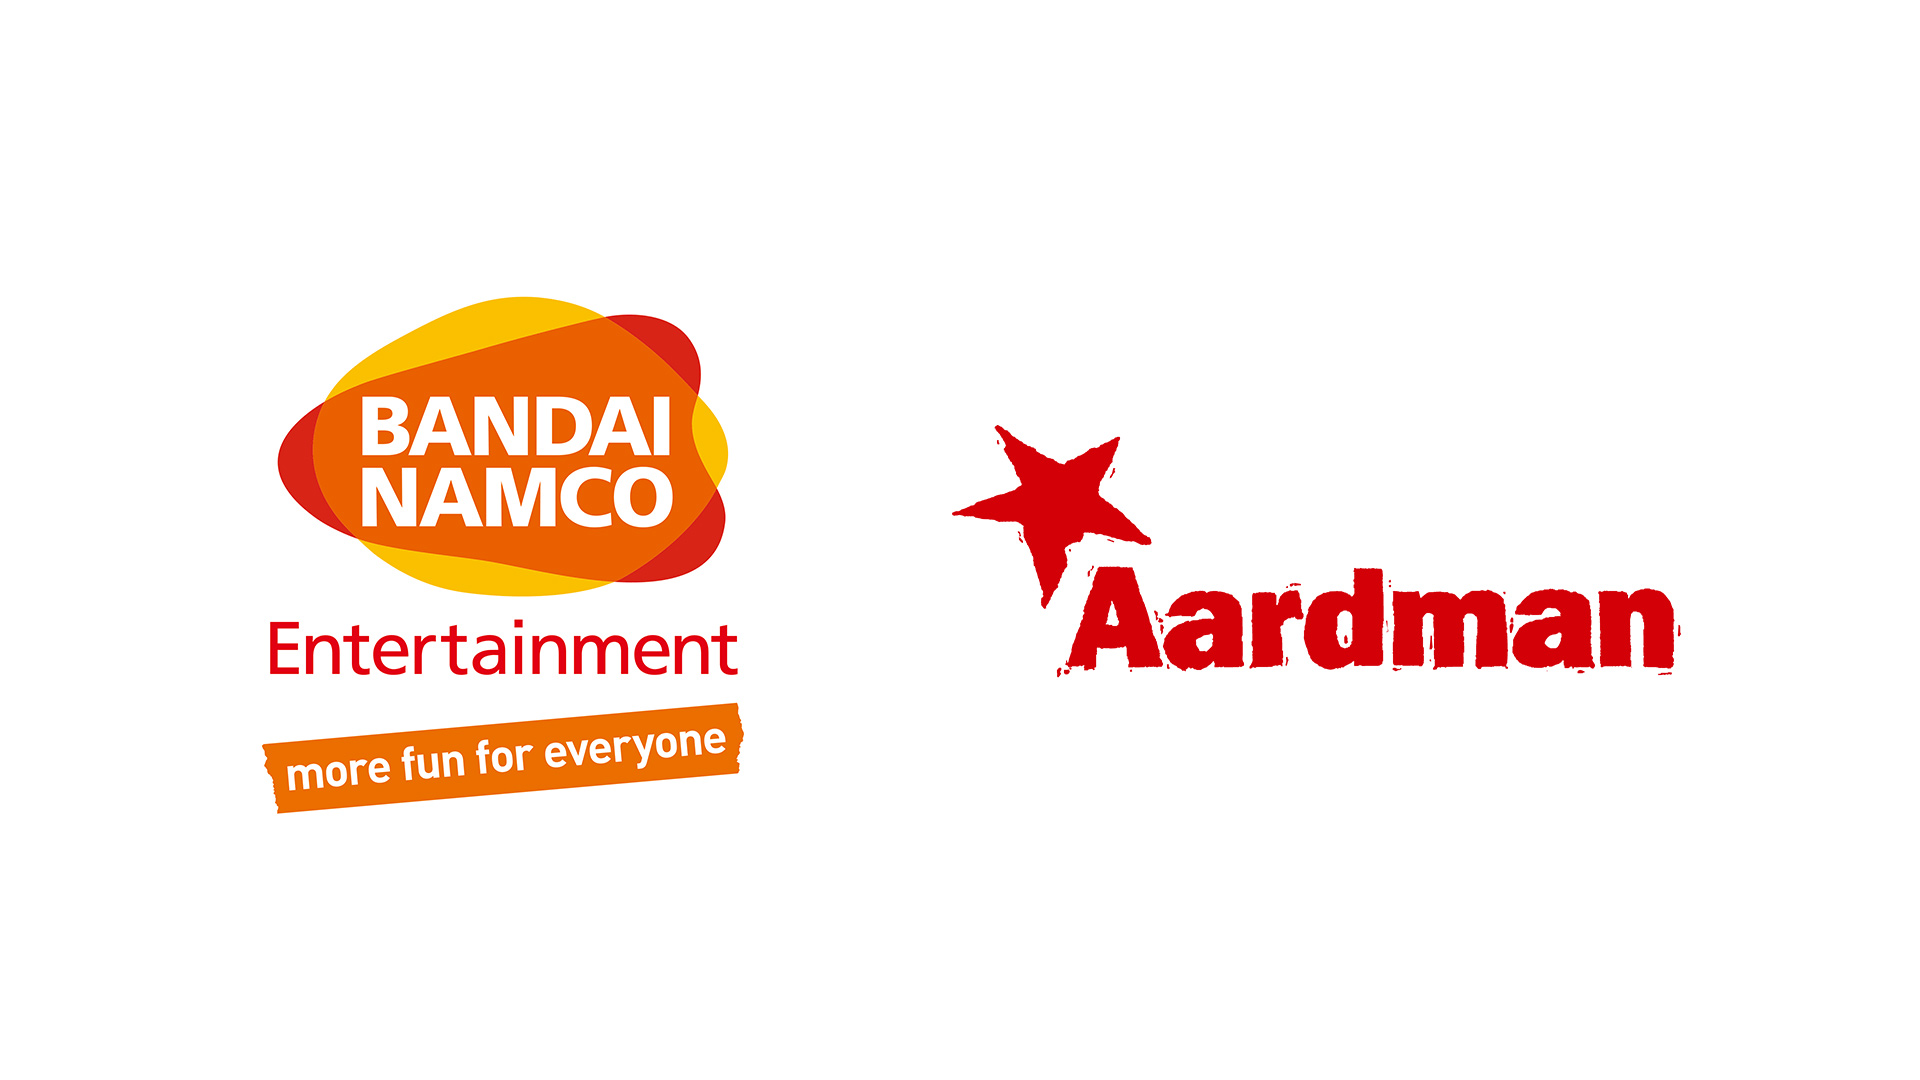 شرکت Bandai Namco با همکاری استودیو Aardman بازی جدیدی می سازد